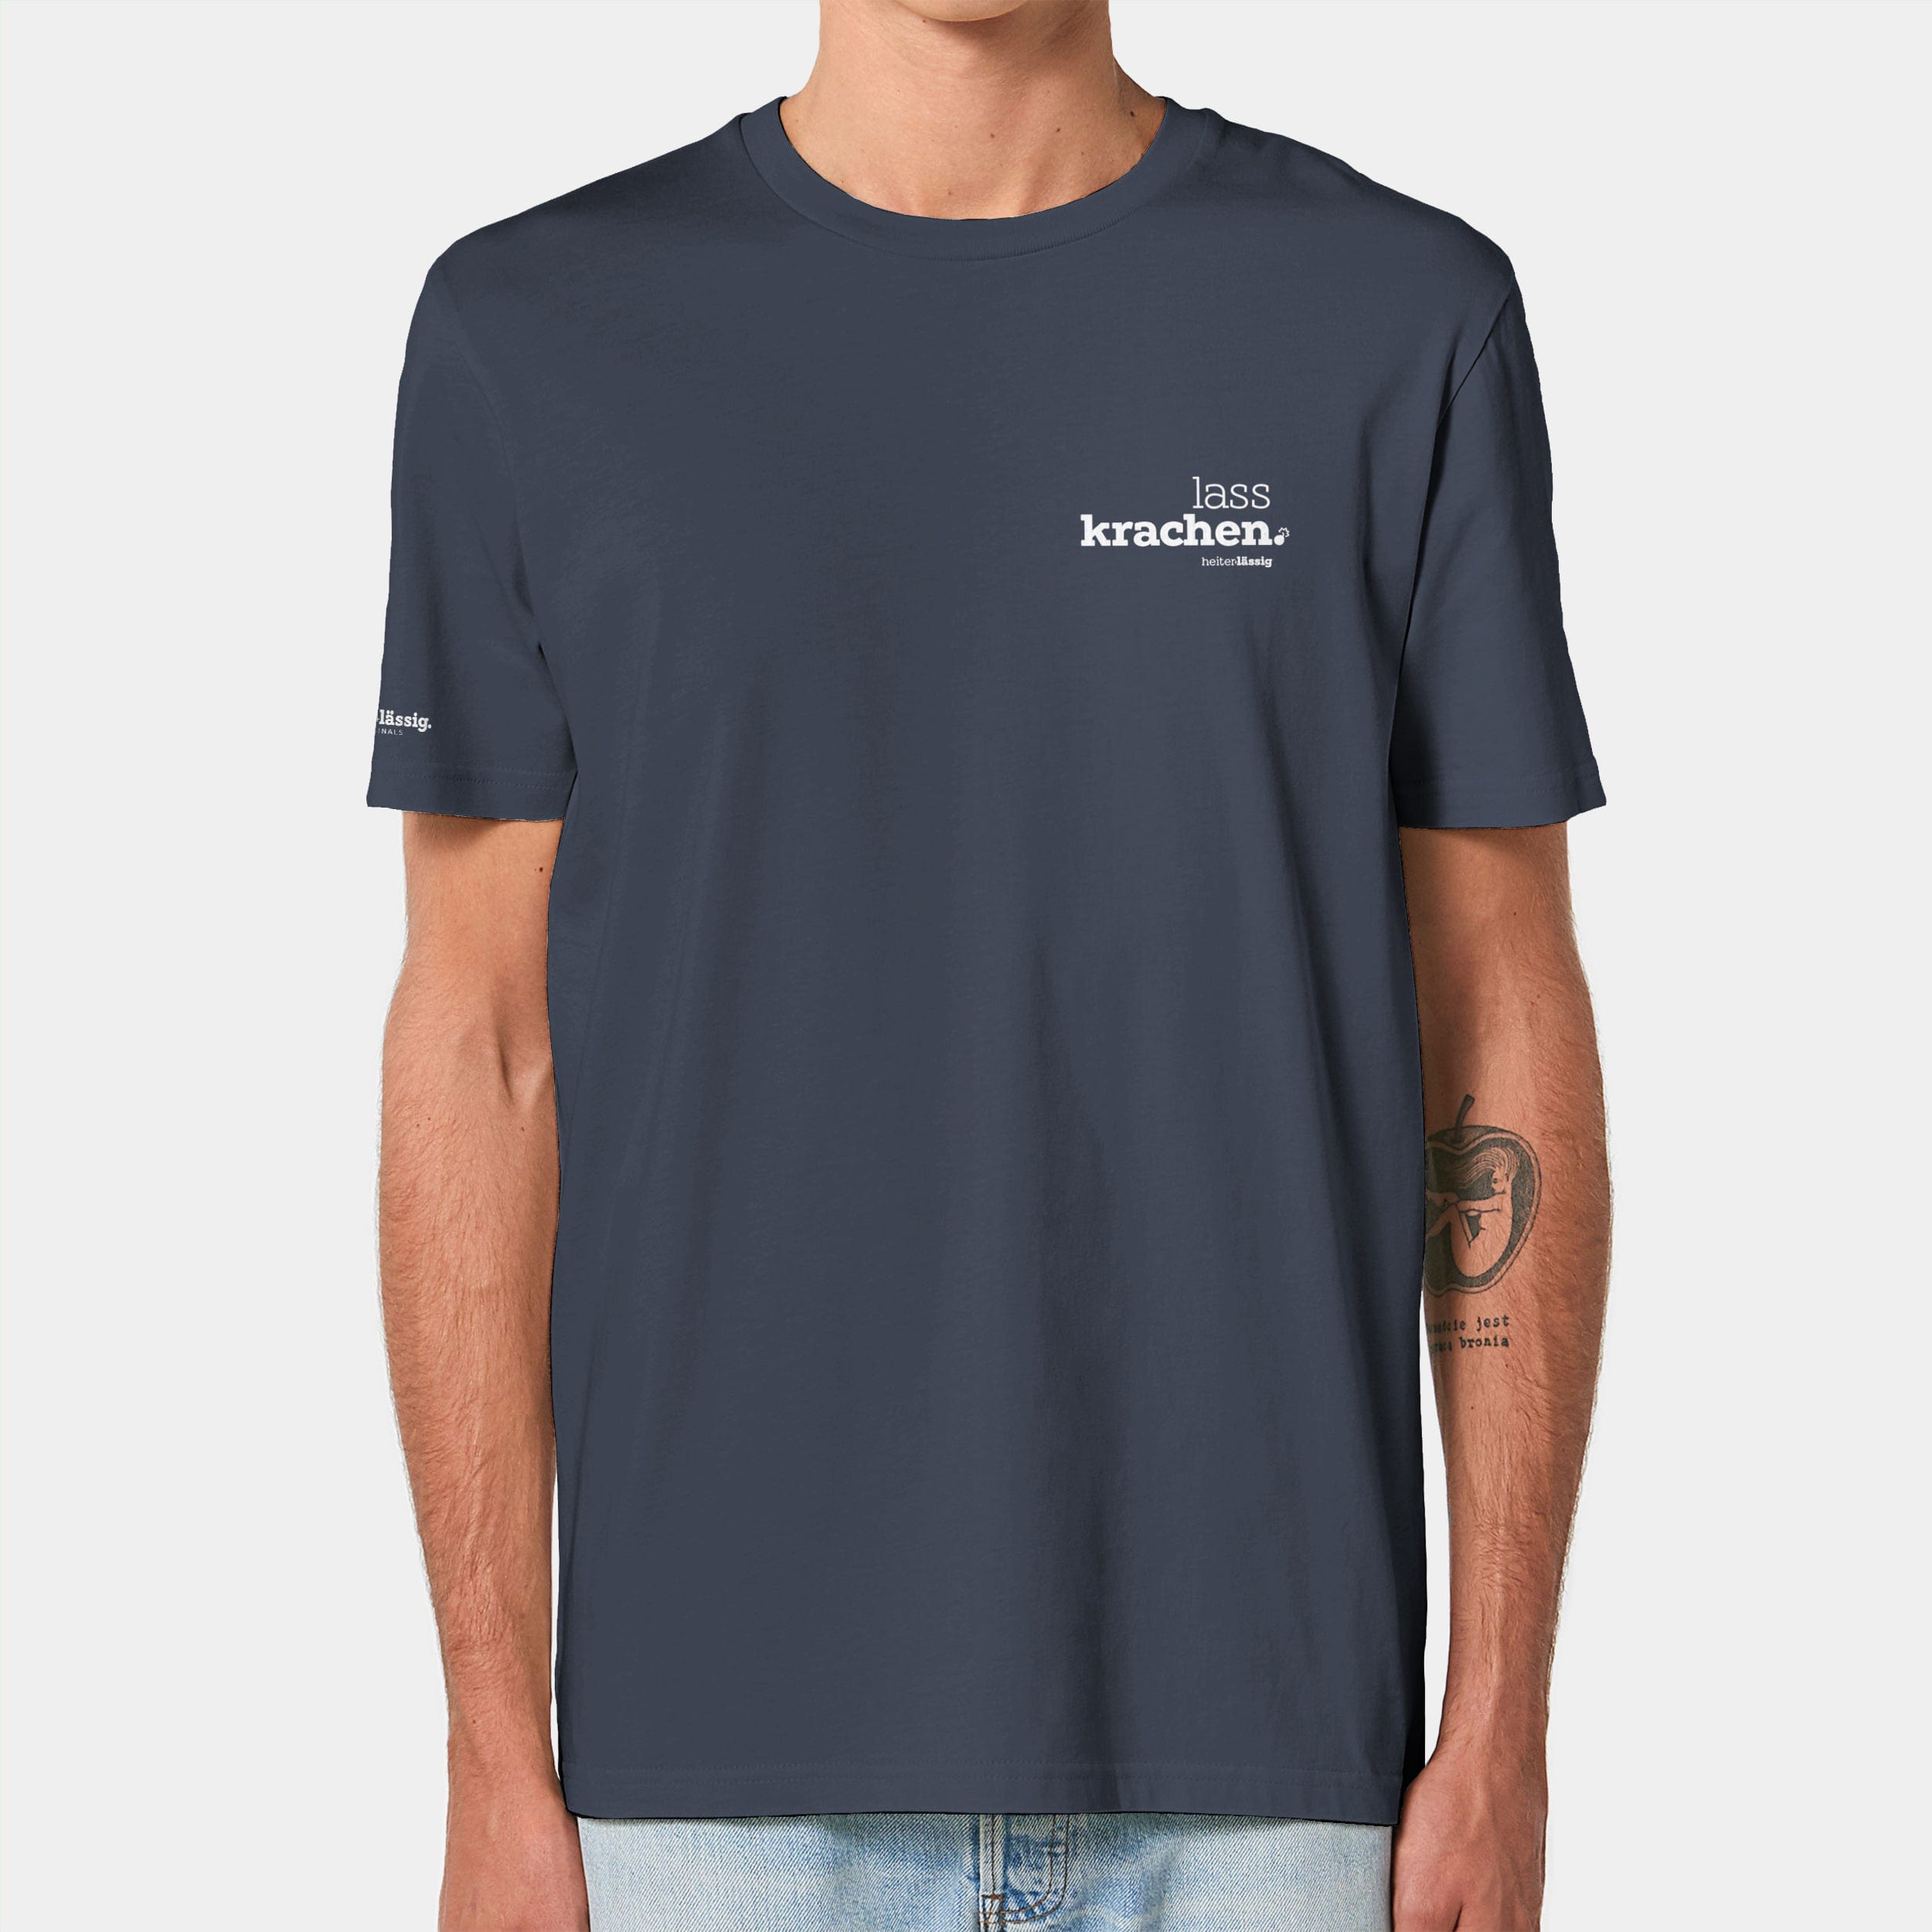 HEITER & LÄSSIG T-Shirt ORIGINAL "lasskrachen" XXS / india ink grey - aus nachhaltiger und fairer Produktion